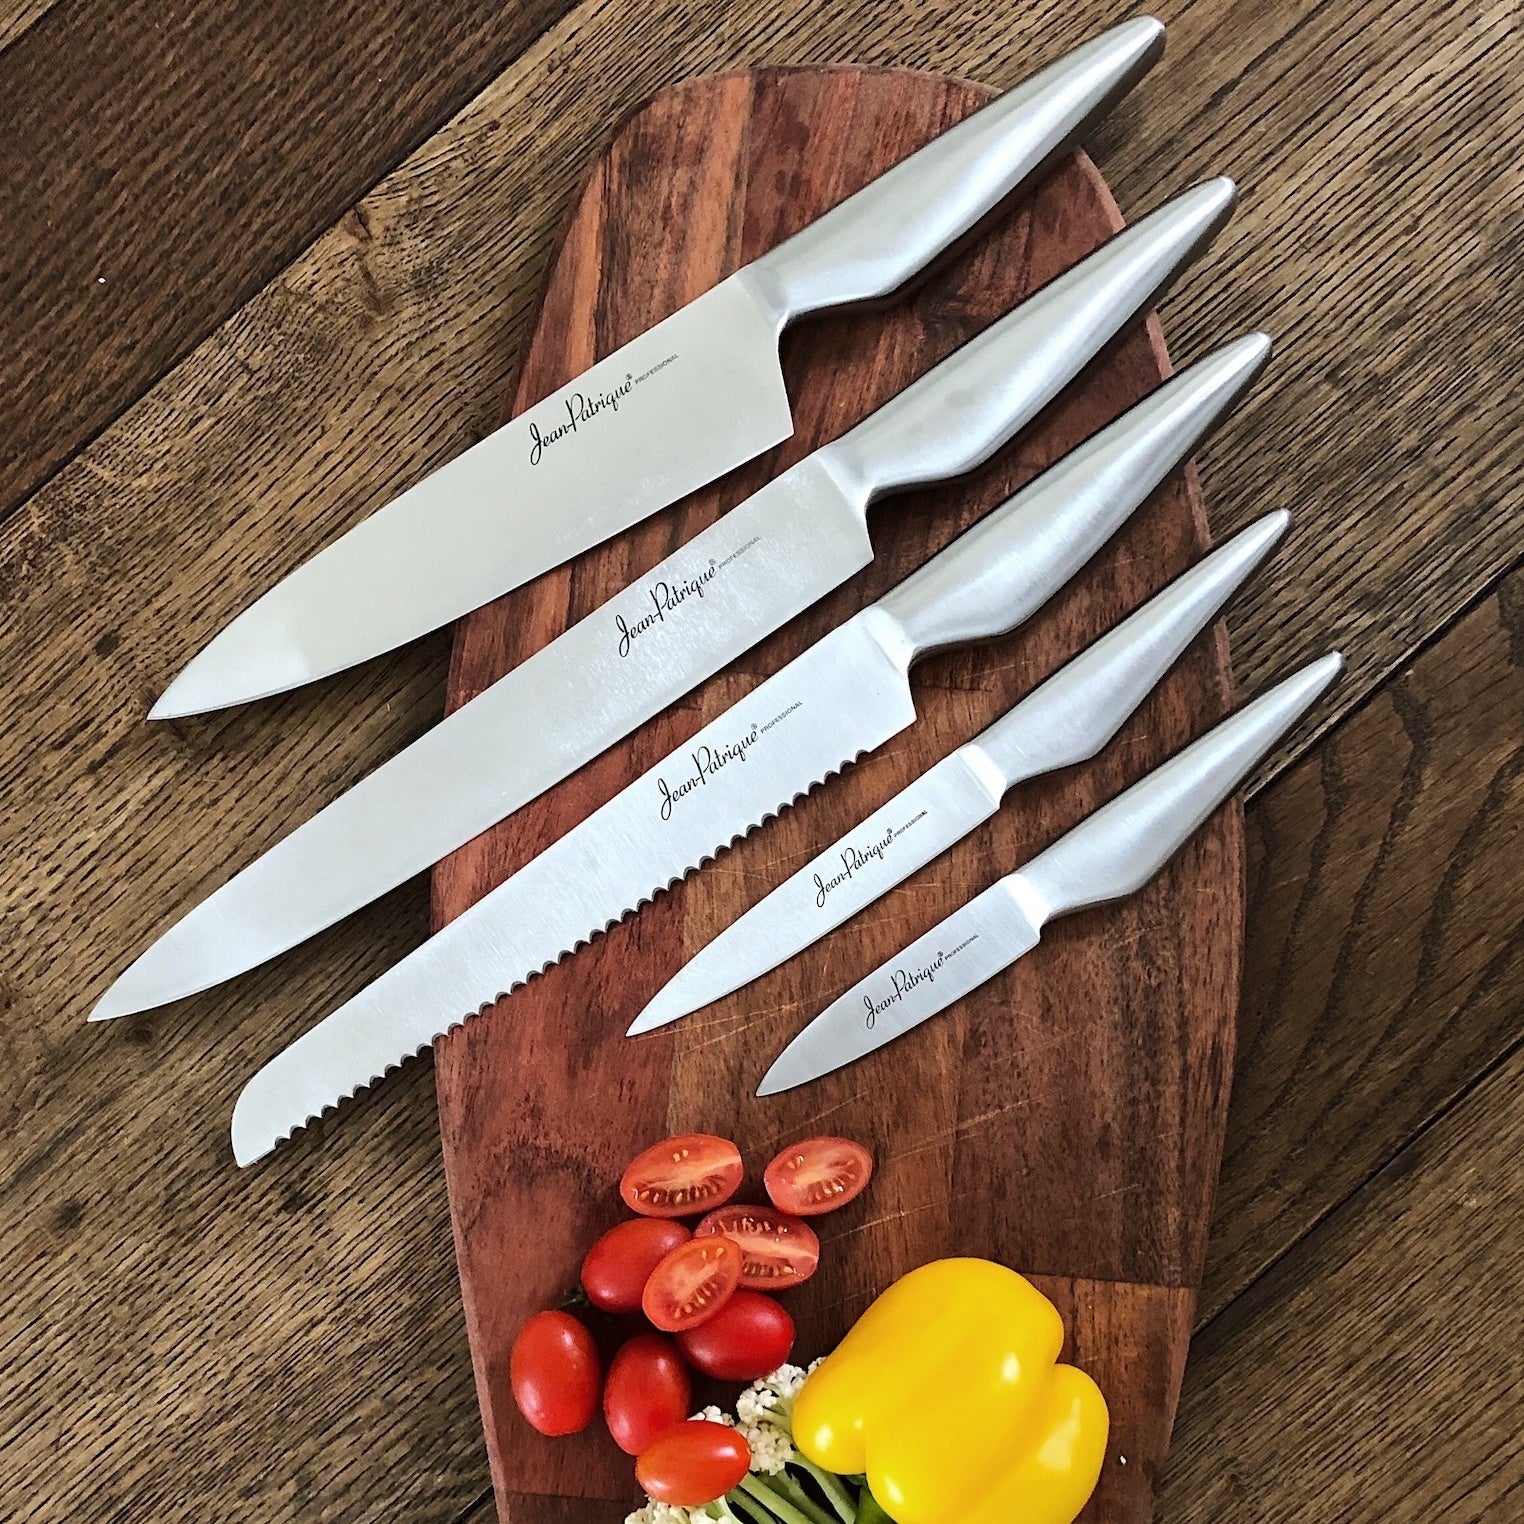 Jean-Patrique Chopaholic Knives (5 Piece Set)